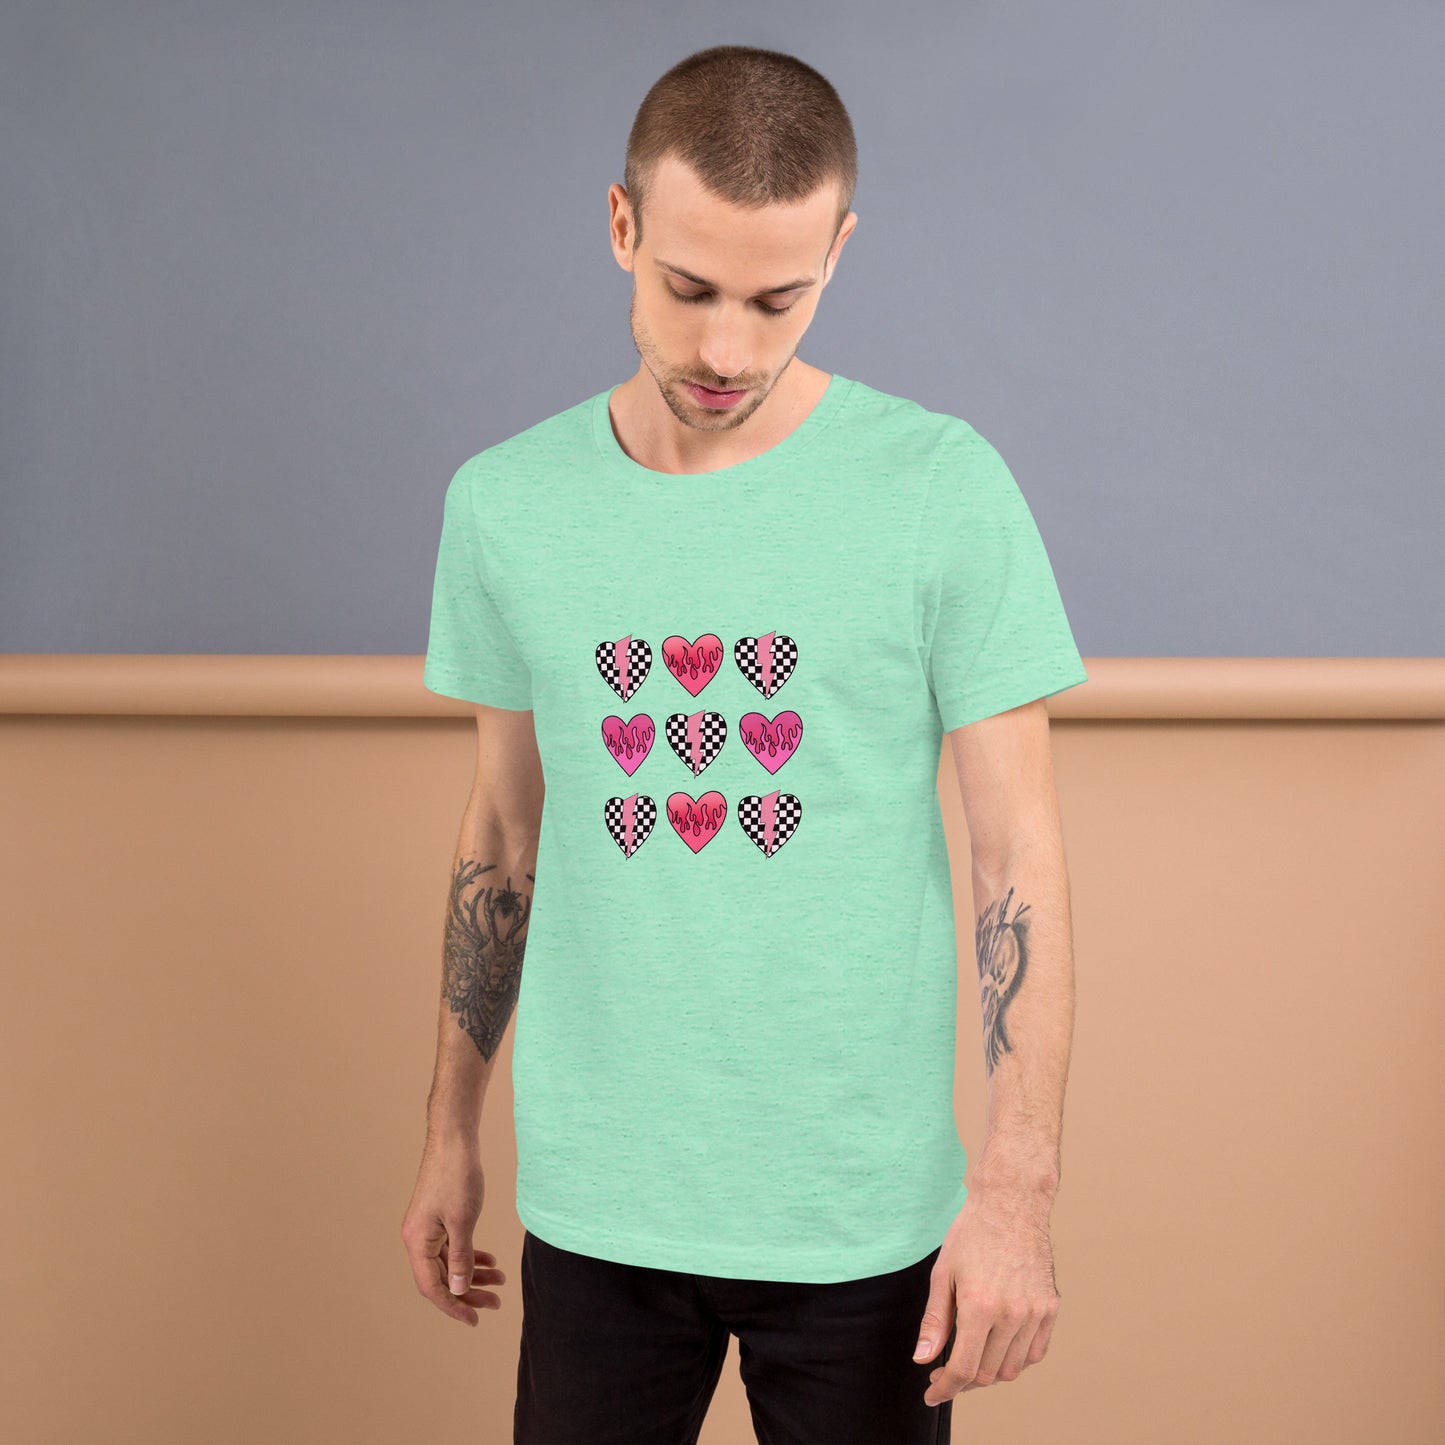 Checkered Heart Pattern Unisex t-shirt